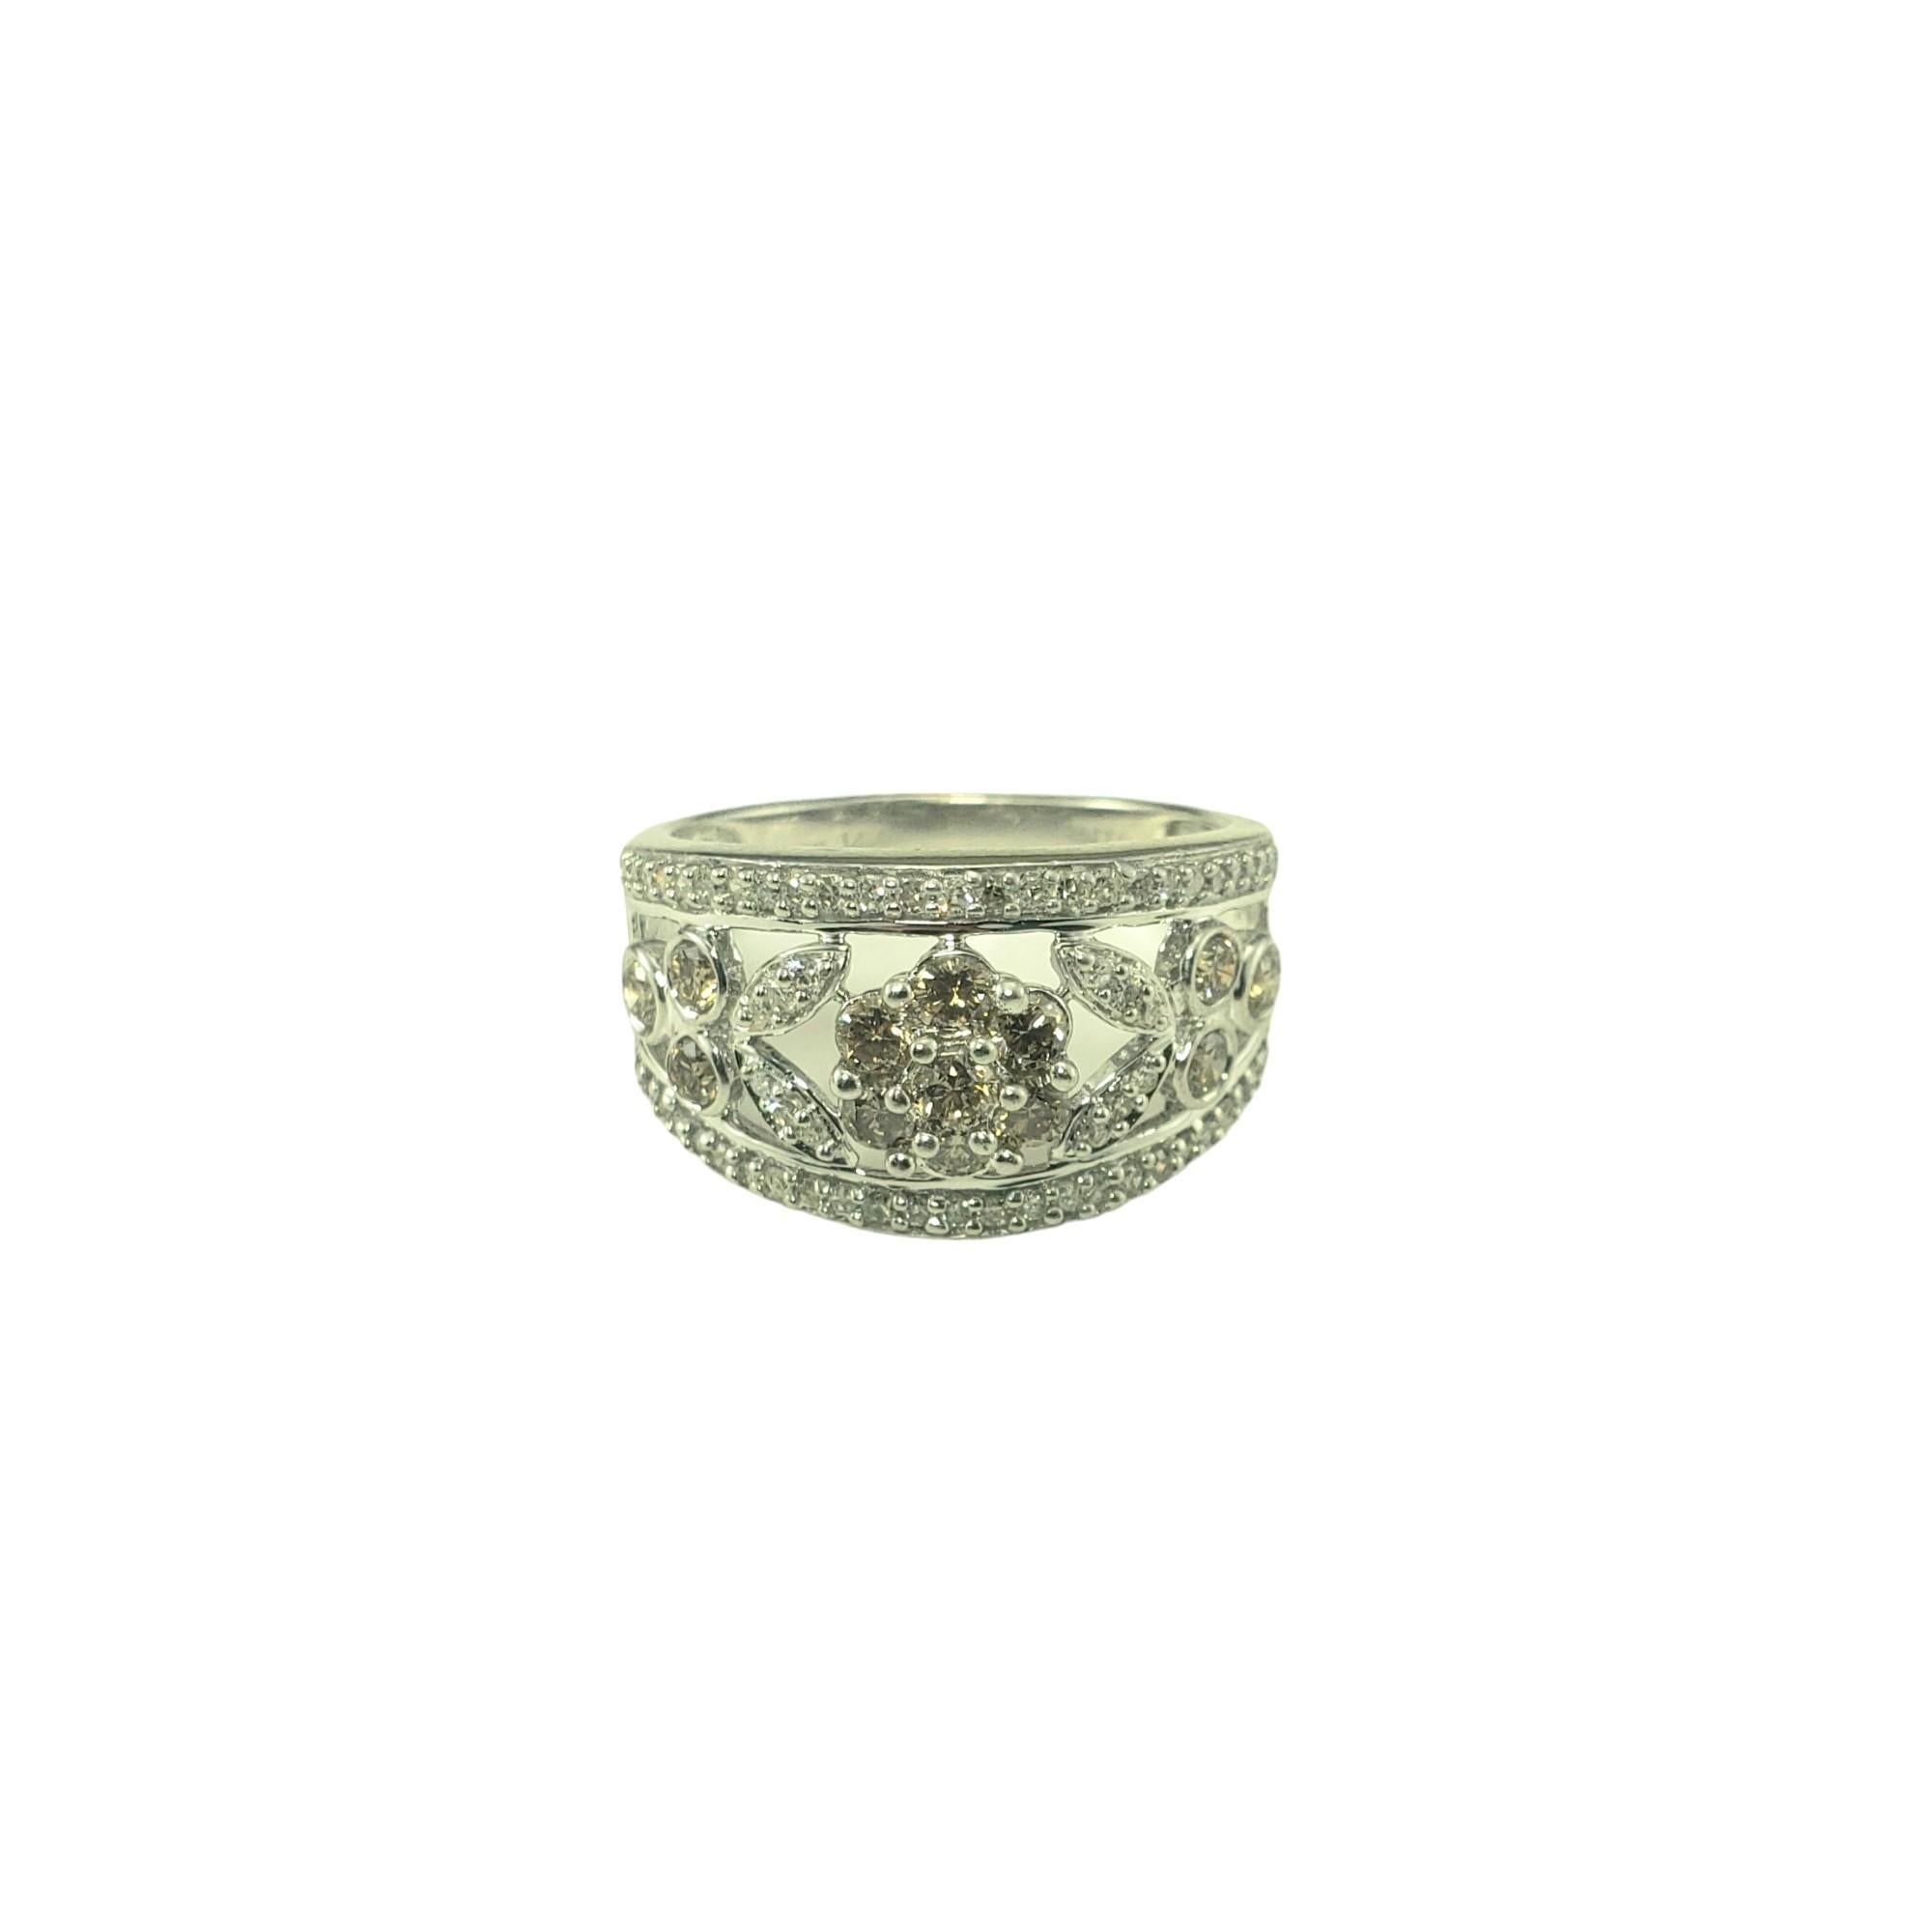 14 Karat Weißgold Floral Diamond Band Ring Größe 7.5-

Dieses funkelnde Band besteht aus 13 runden champagnerfarbenen Diamanten und 62 runden Diamanten im Einzelschliff, die in wunderschönes, offenes 14-karätiges Weißgold gefasst sind.  

Breite: 13